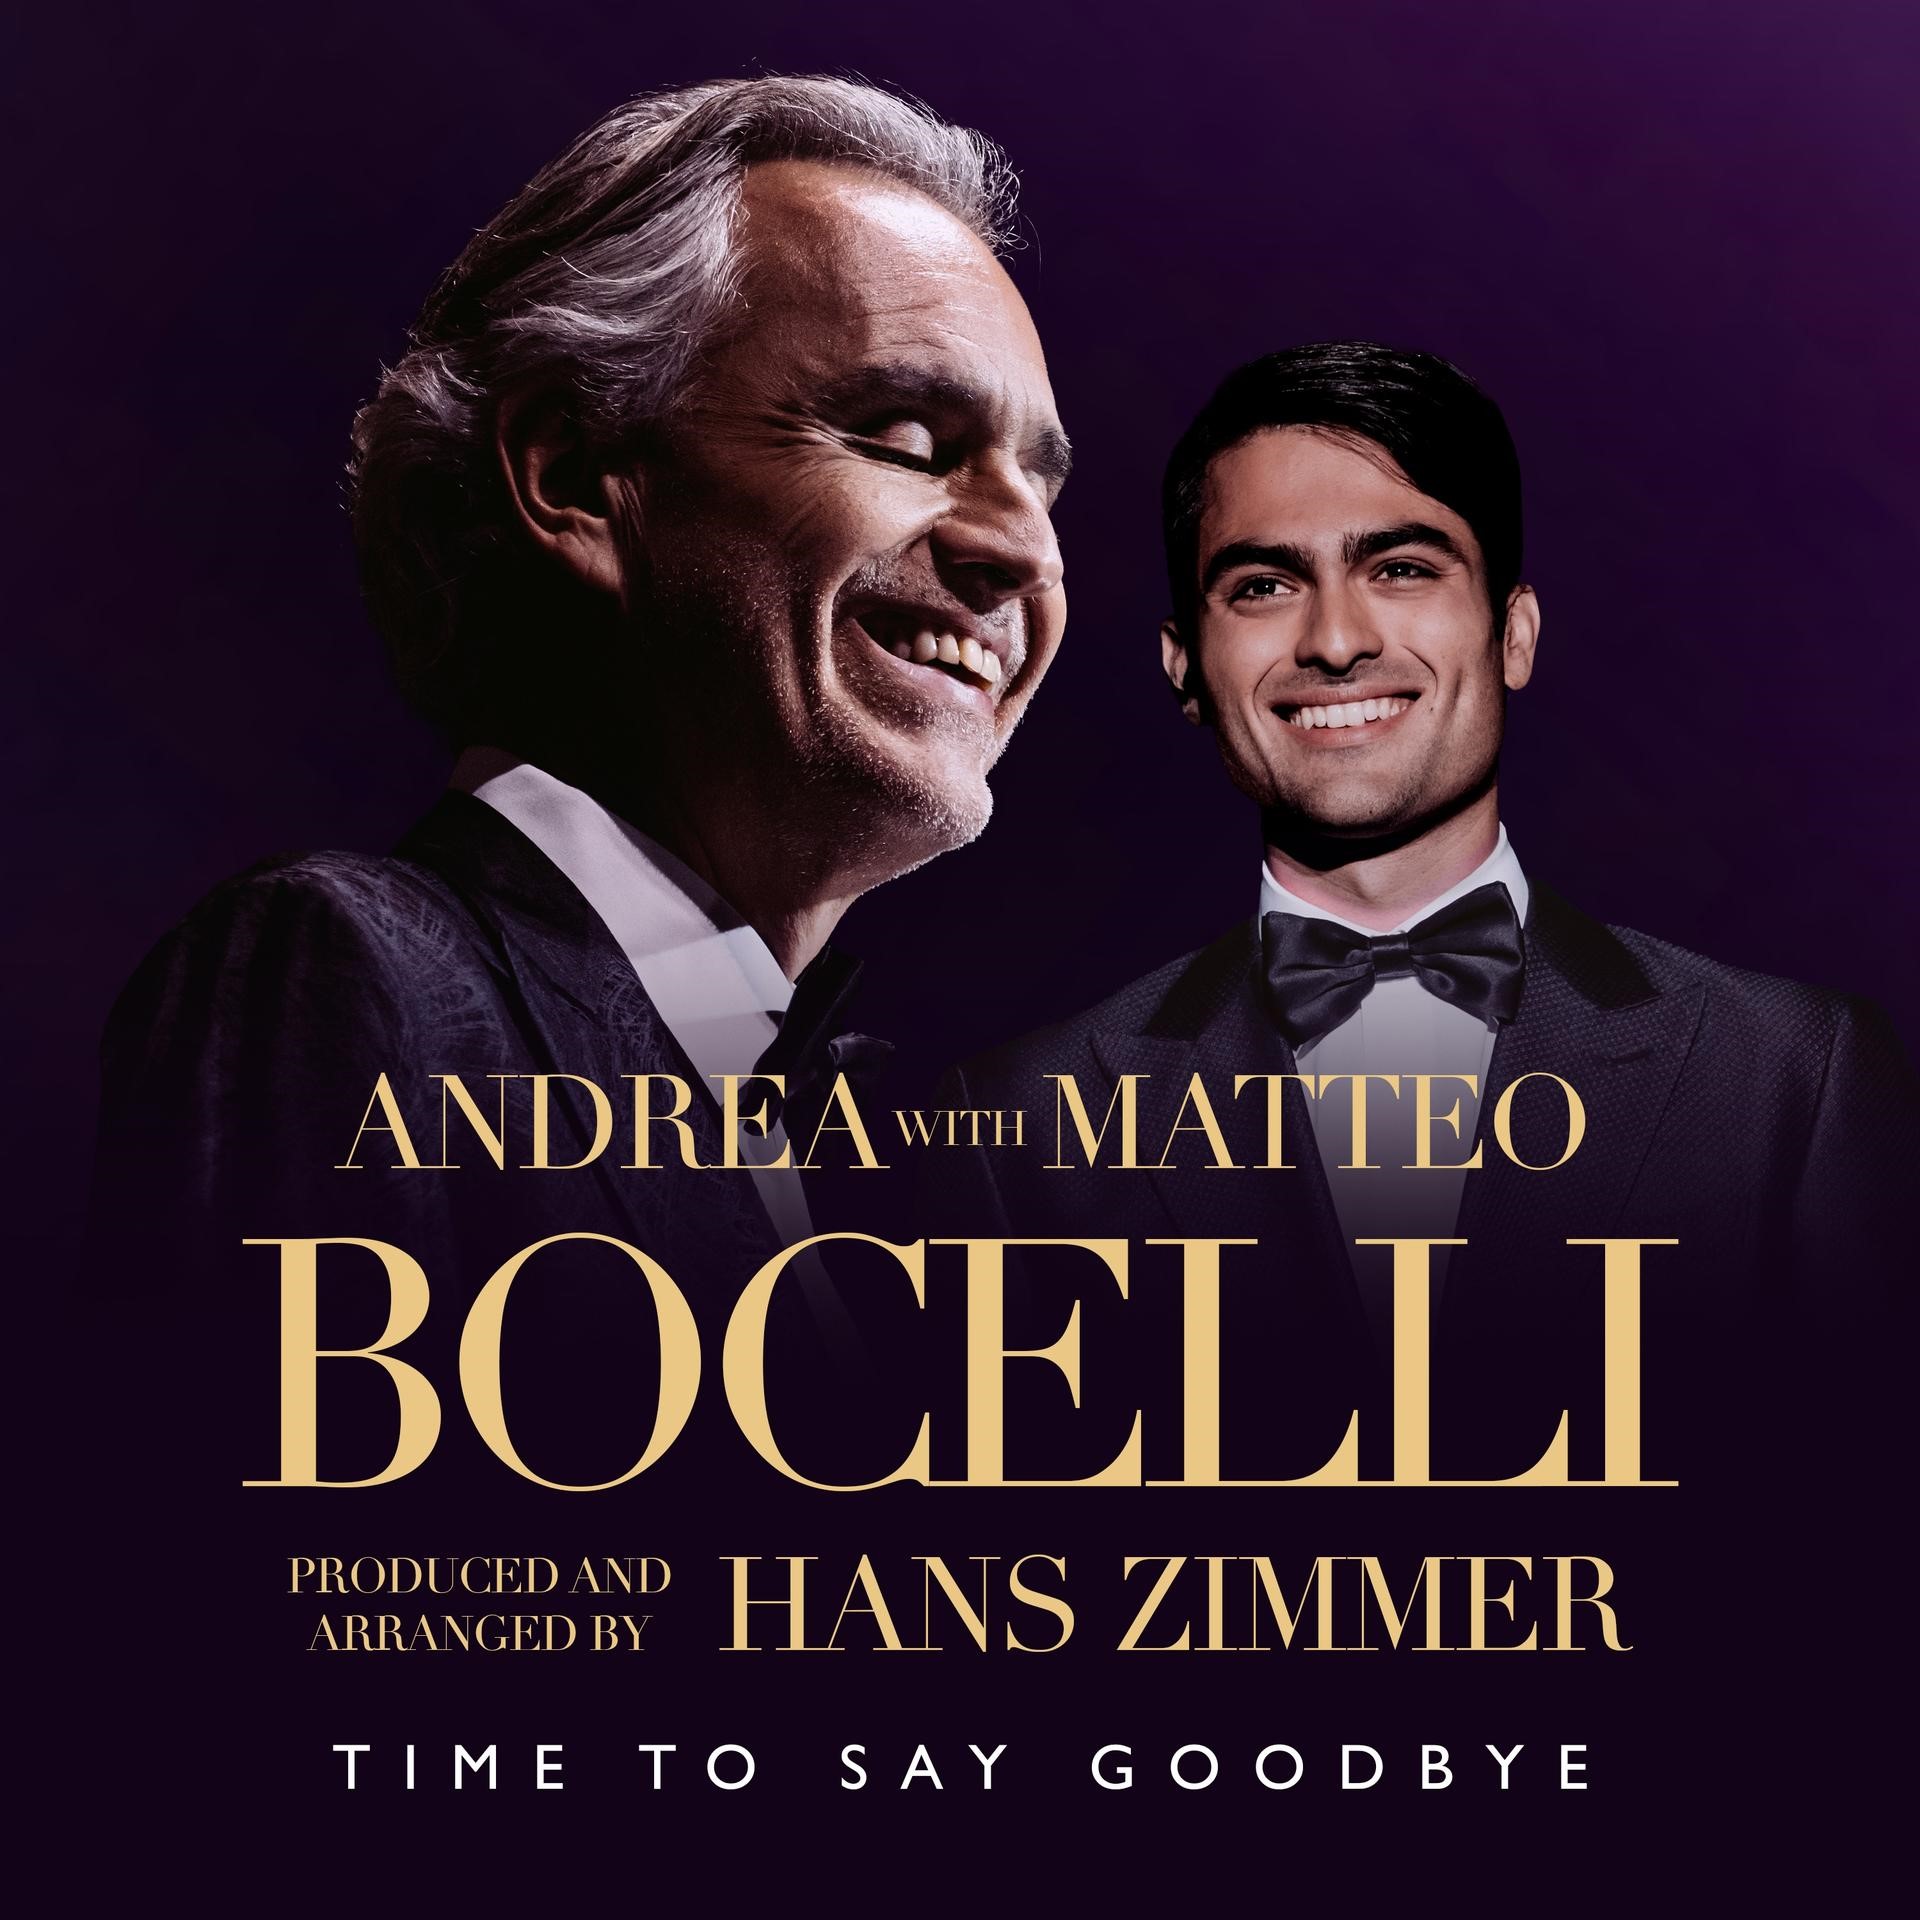 Andrea y Matteo Bocelli estrenan nueva versión de "‘Time To Say Goodbye"